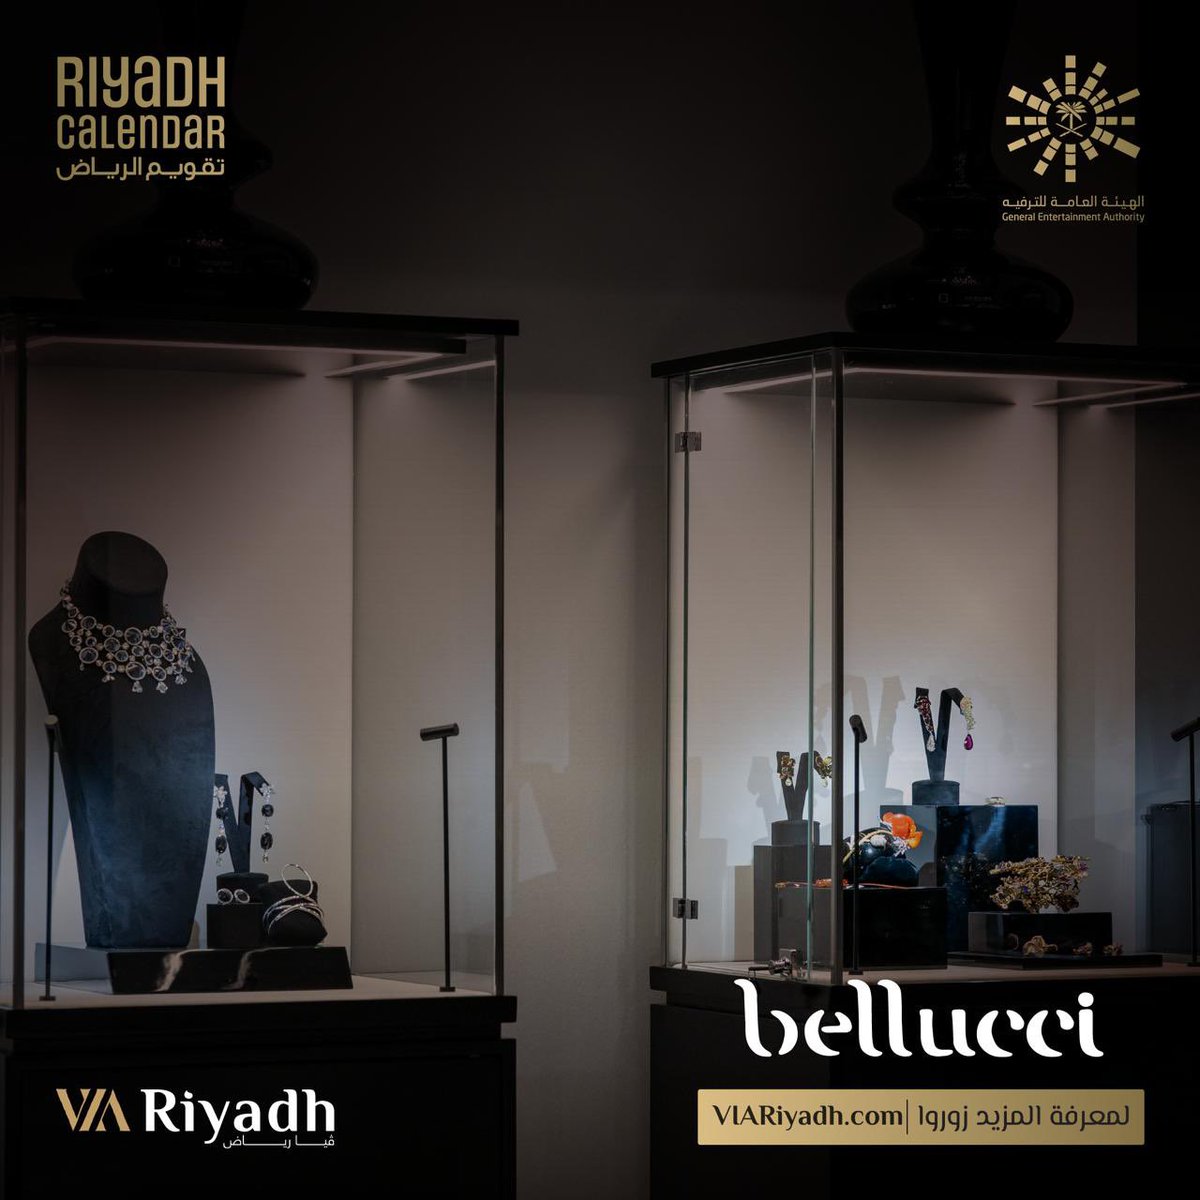 الأناقة والرفاهية في متجر Bellucci للمجوهرات #فيا_رياض 😍❤️
للحجز:
viariyadh.com/ar/shop
#تقويم_الرياض